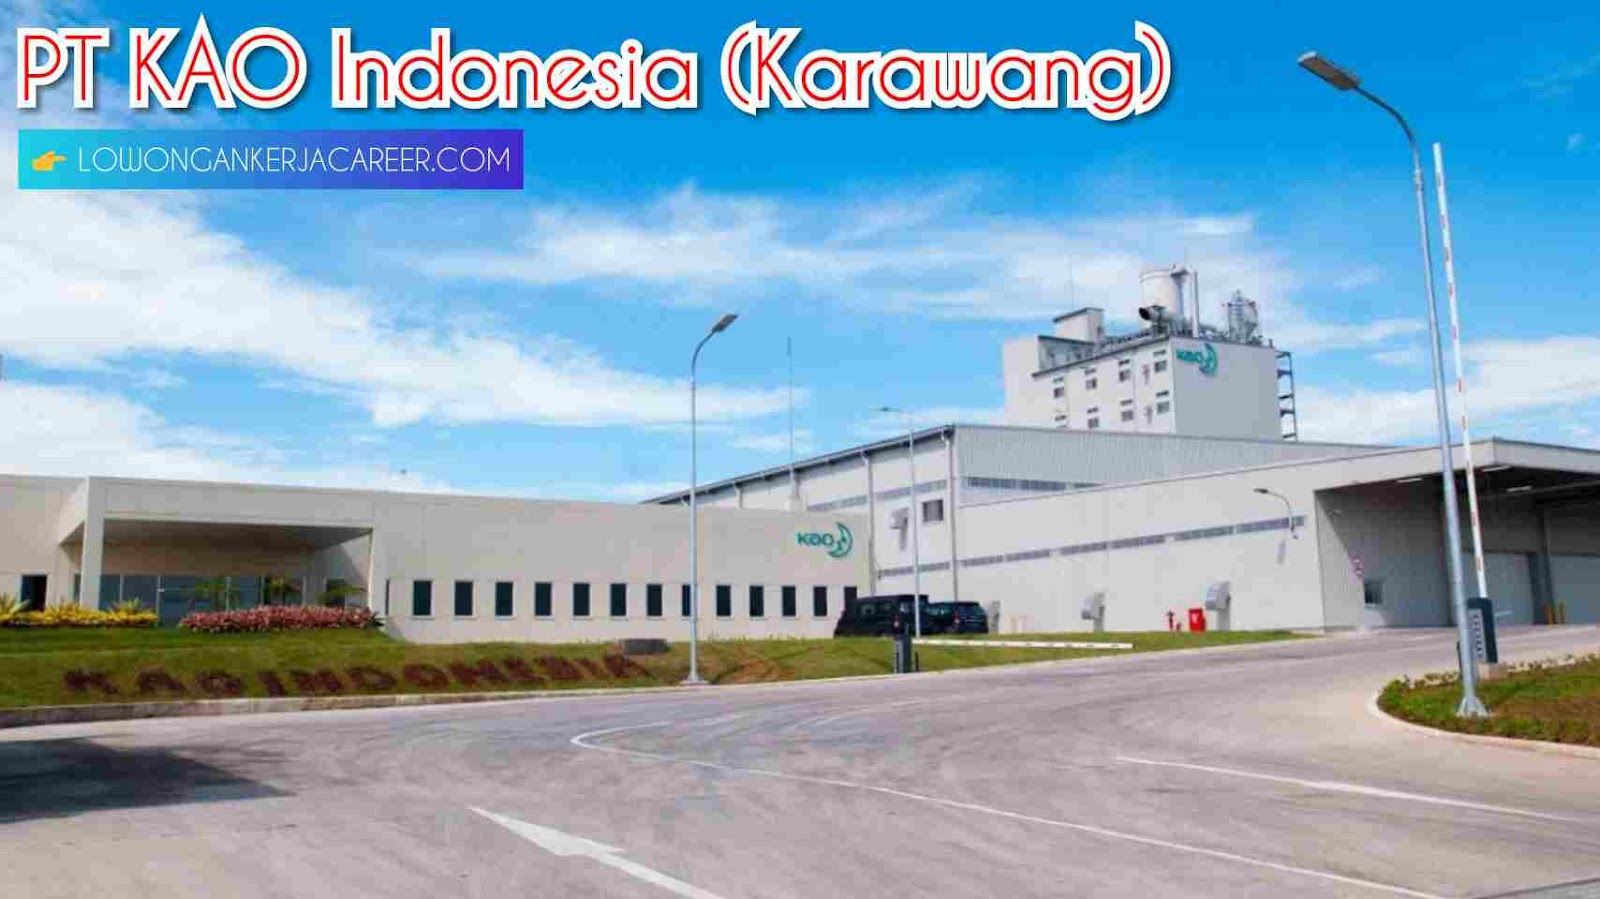 Loker Karawang Pt Kao Indonesia Kawasan Kiic April 2020 2021